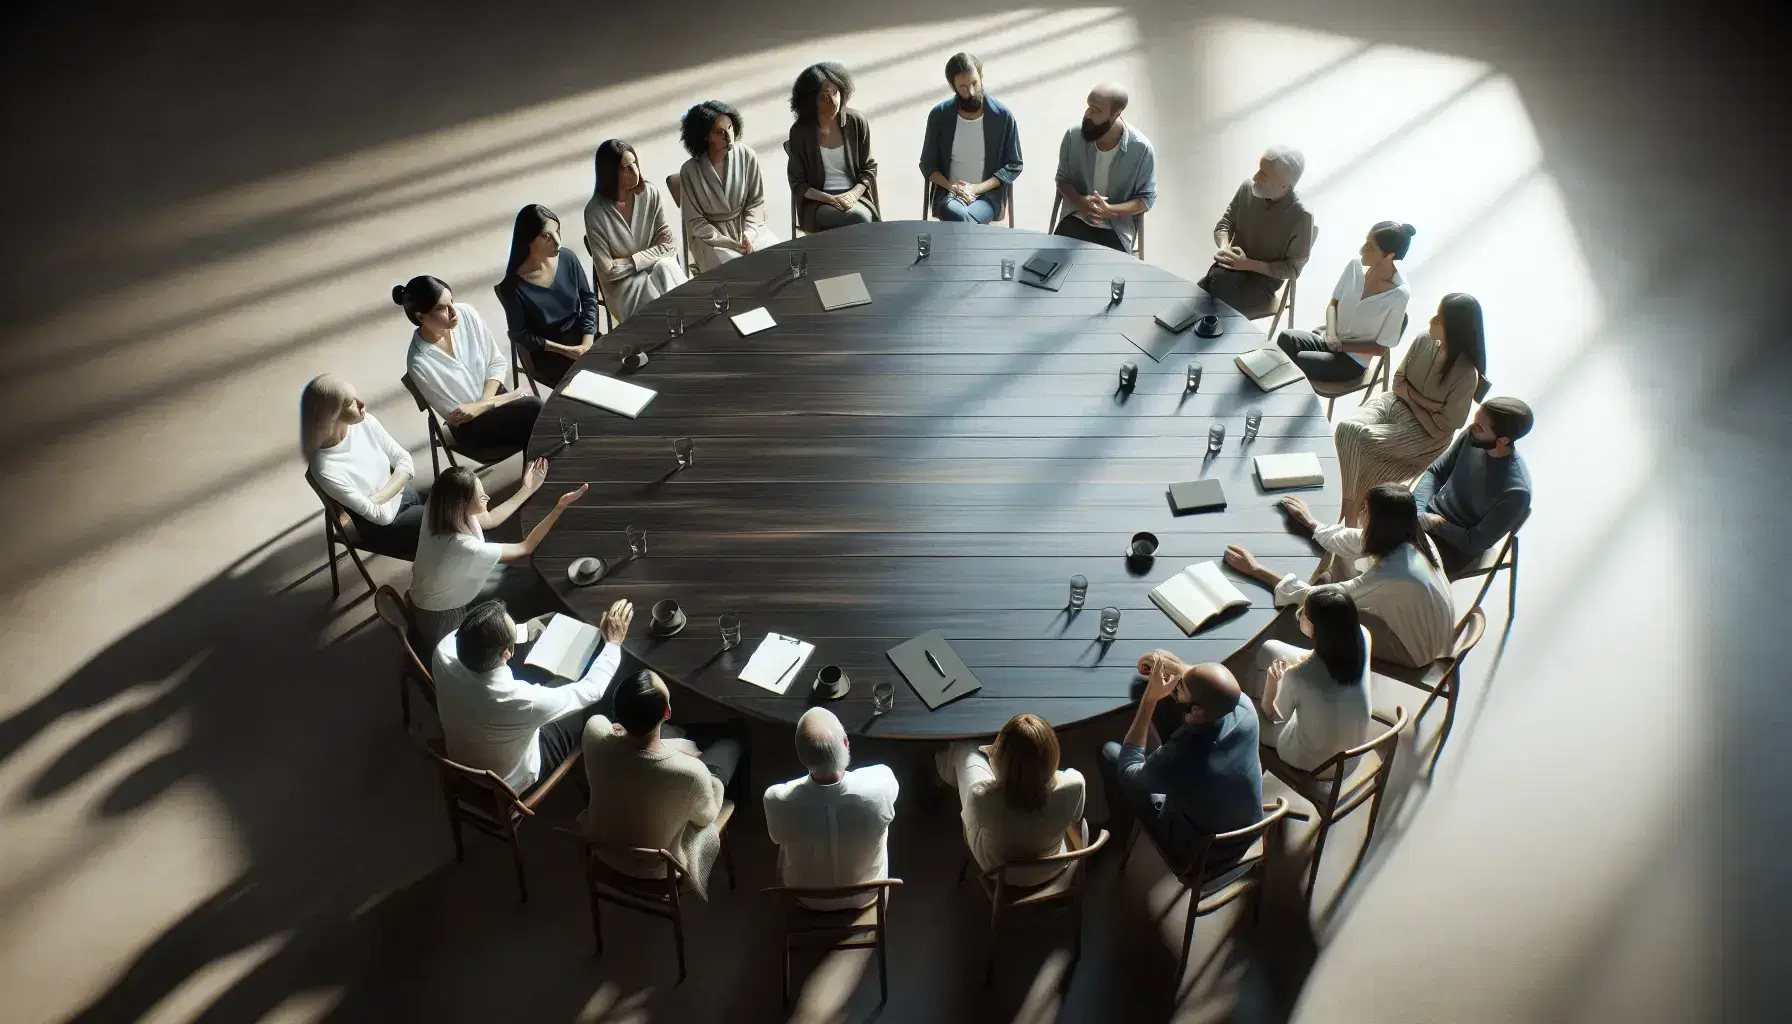 Grupo diverso en animada discusión alrededor de una mesa redonda de madera en una sala iluminada naturalmente, sin dispositivos electrónicos.